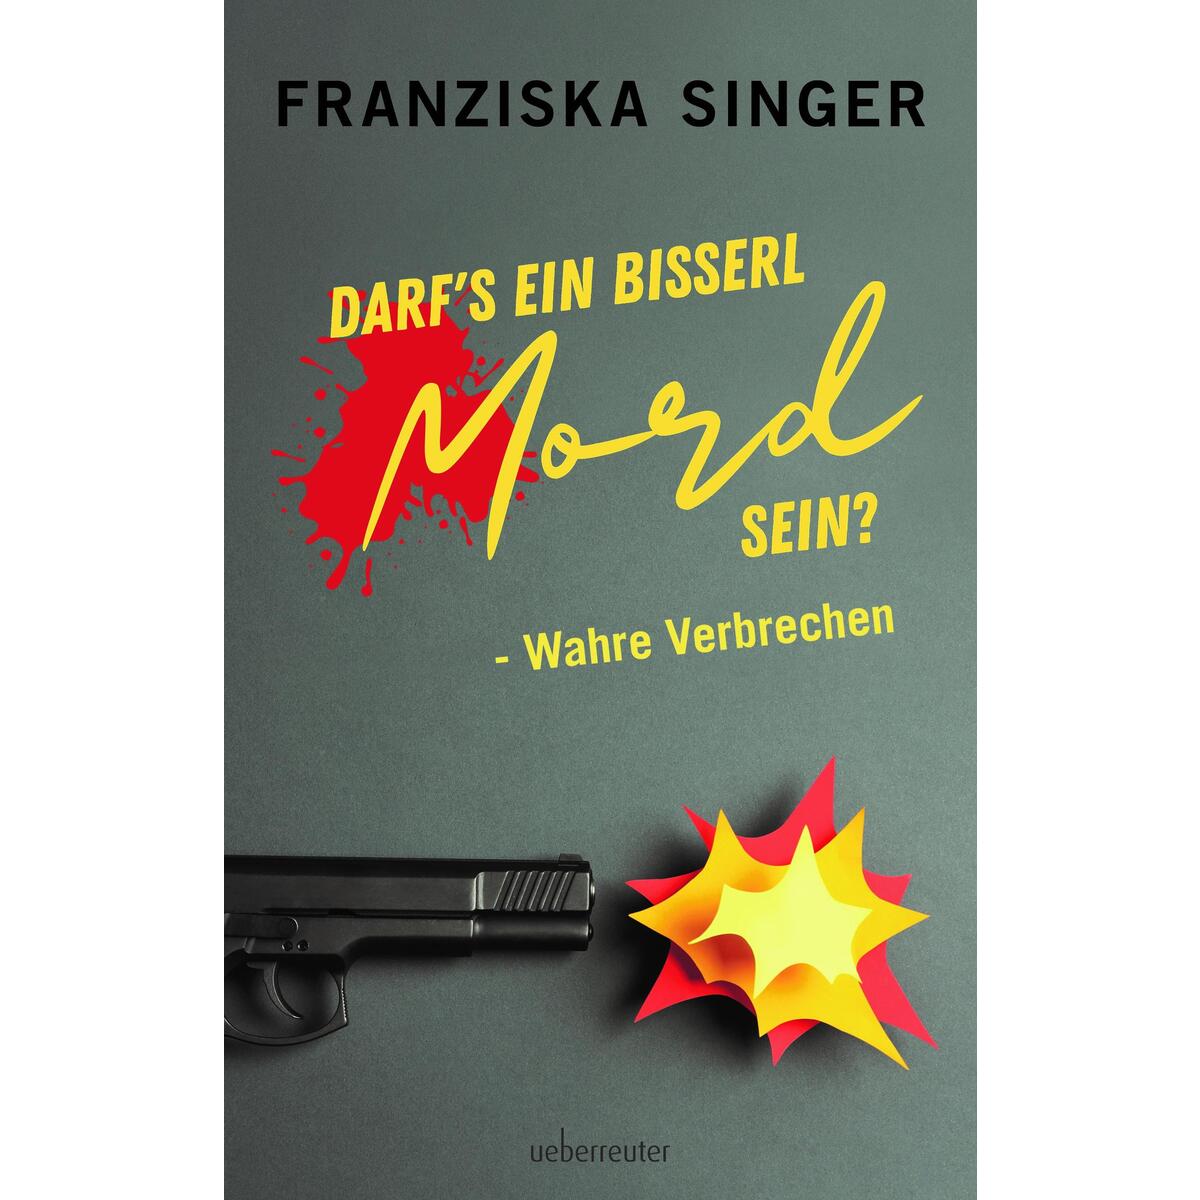 Darf´s ein bisserl Mord sein? - Wahre Verbrechen von Ueberreuter, Carl Verlag